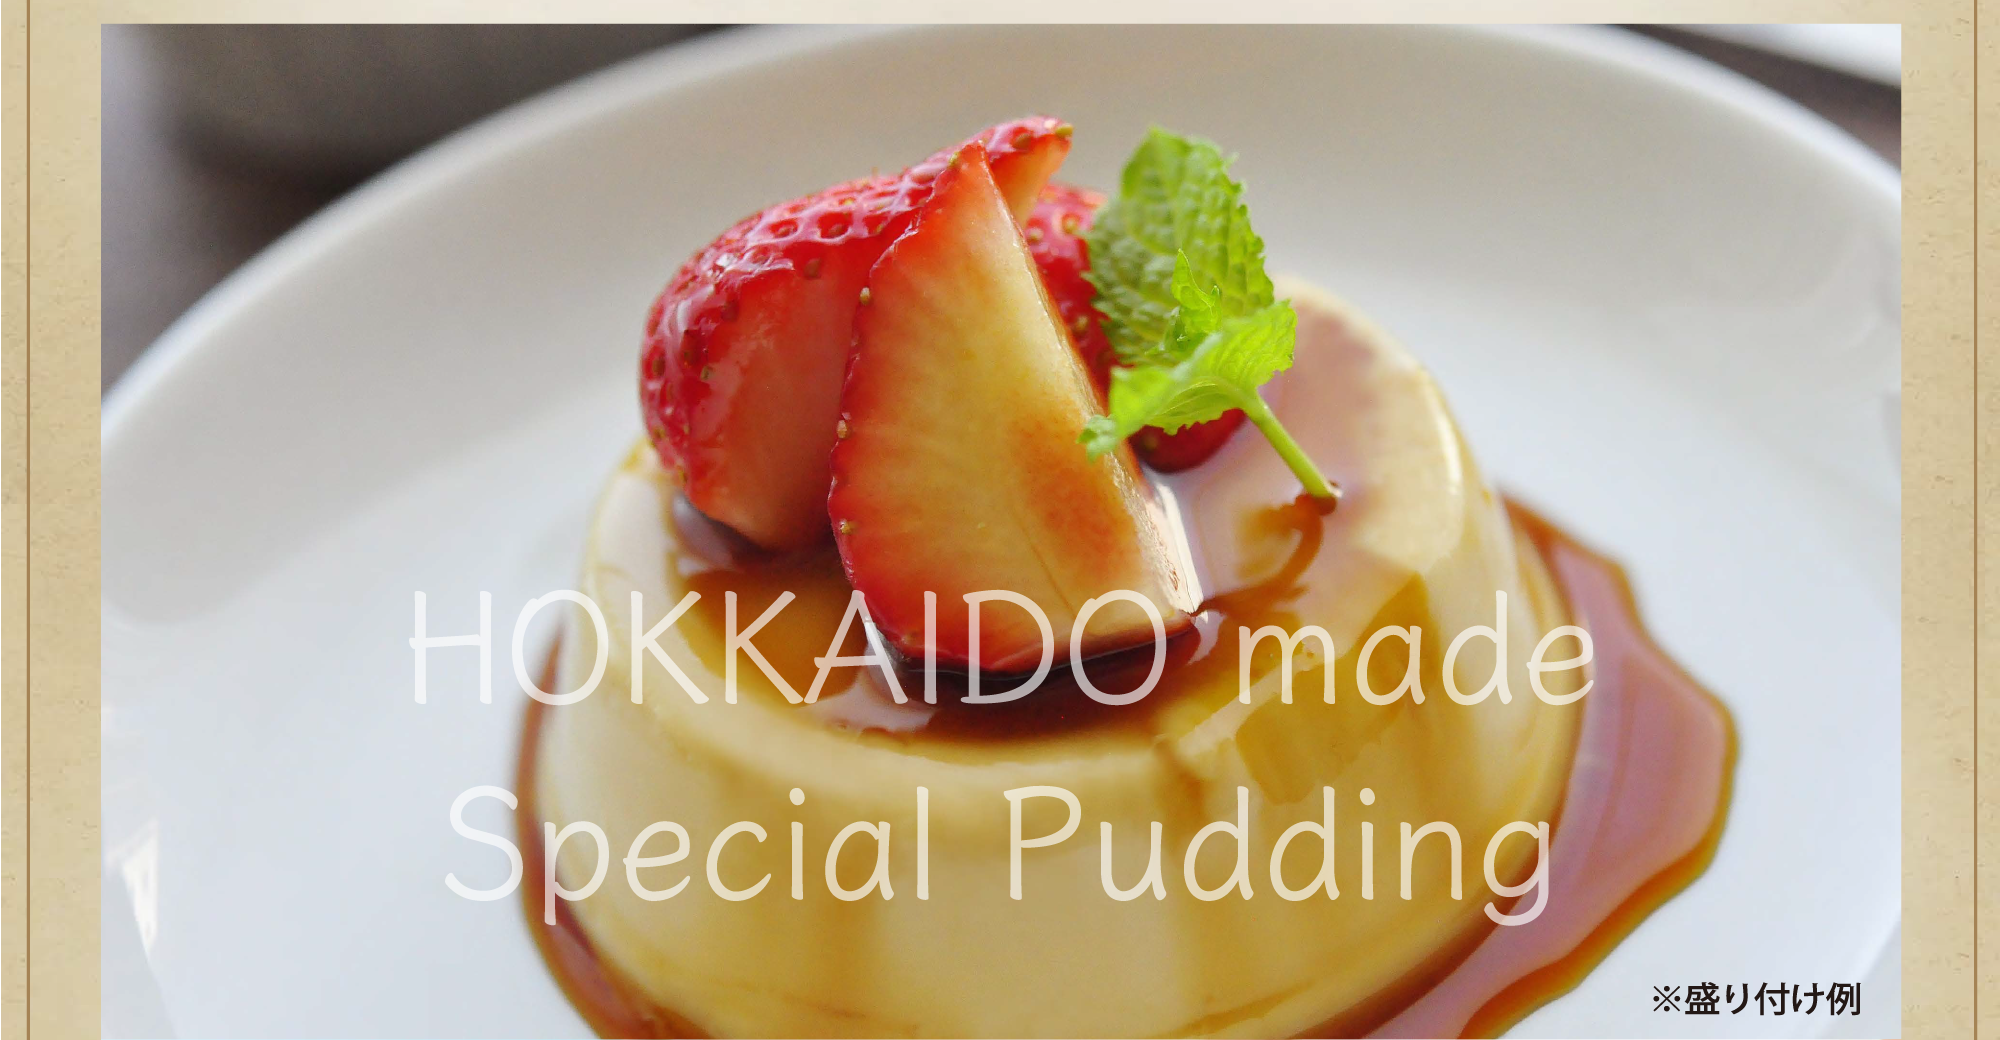 HOKKAIDO made Special Pudding